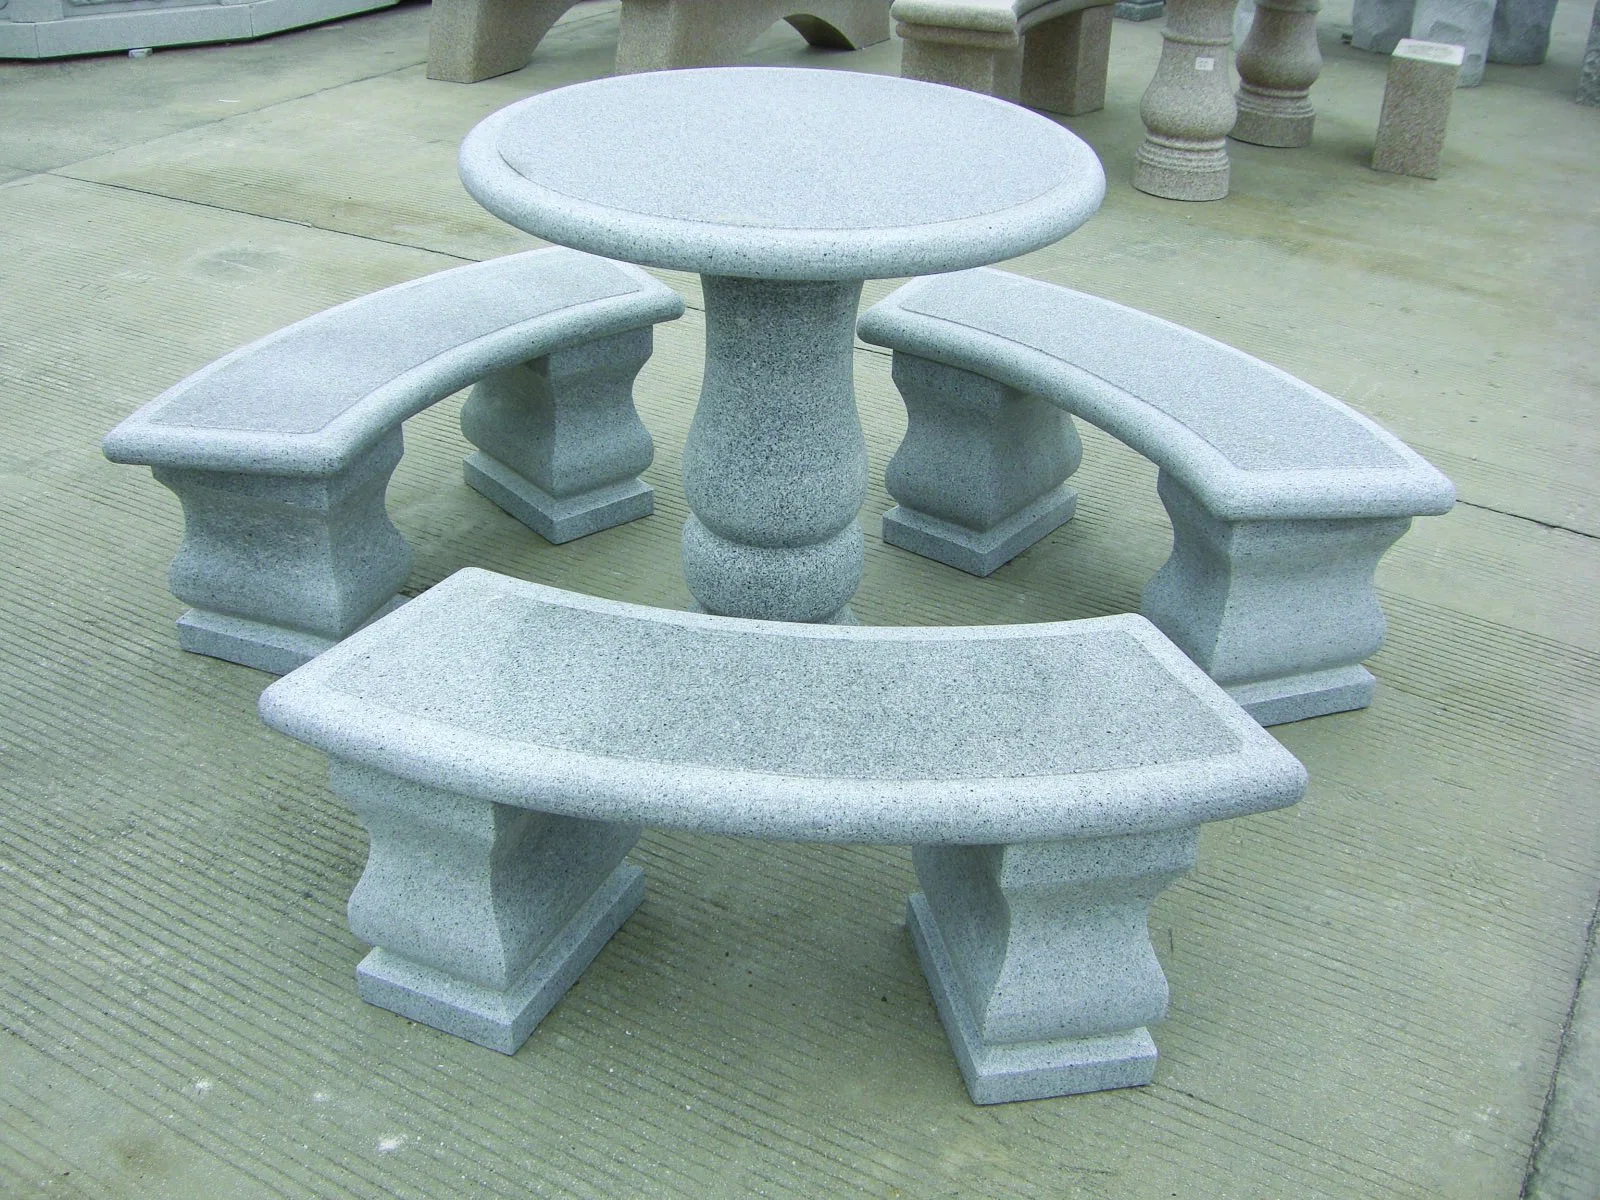 Garten mit Granitstein-Tischen und Stühlen/Bänken im Freien